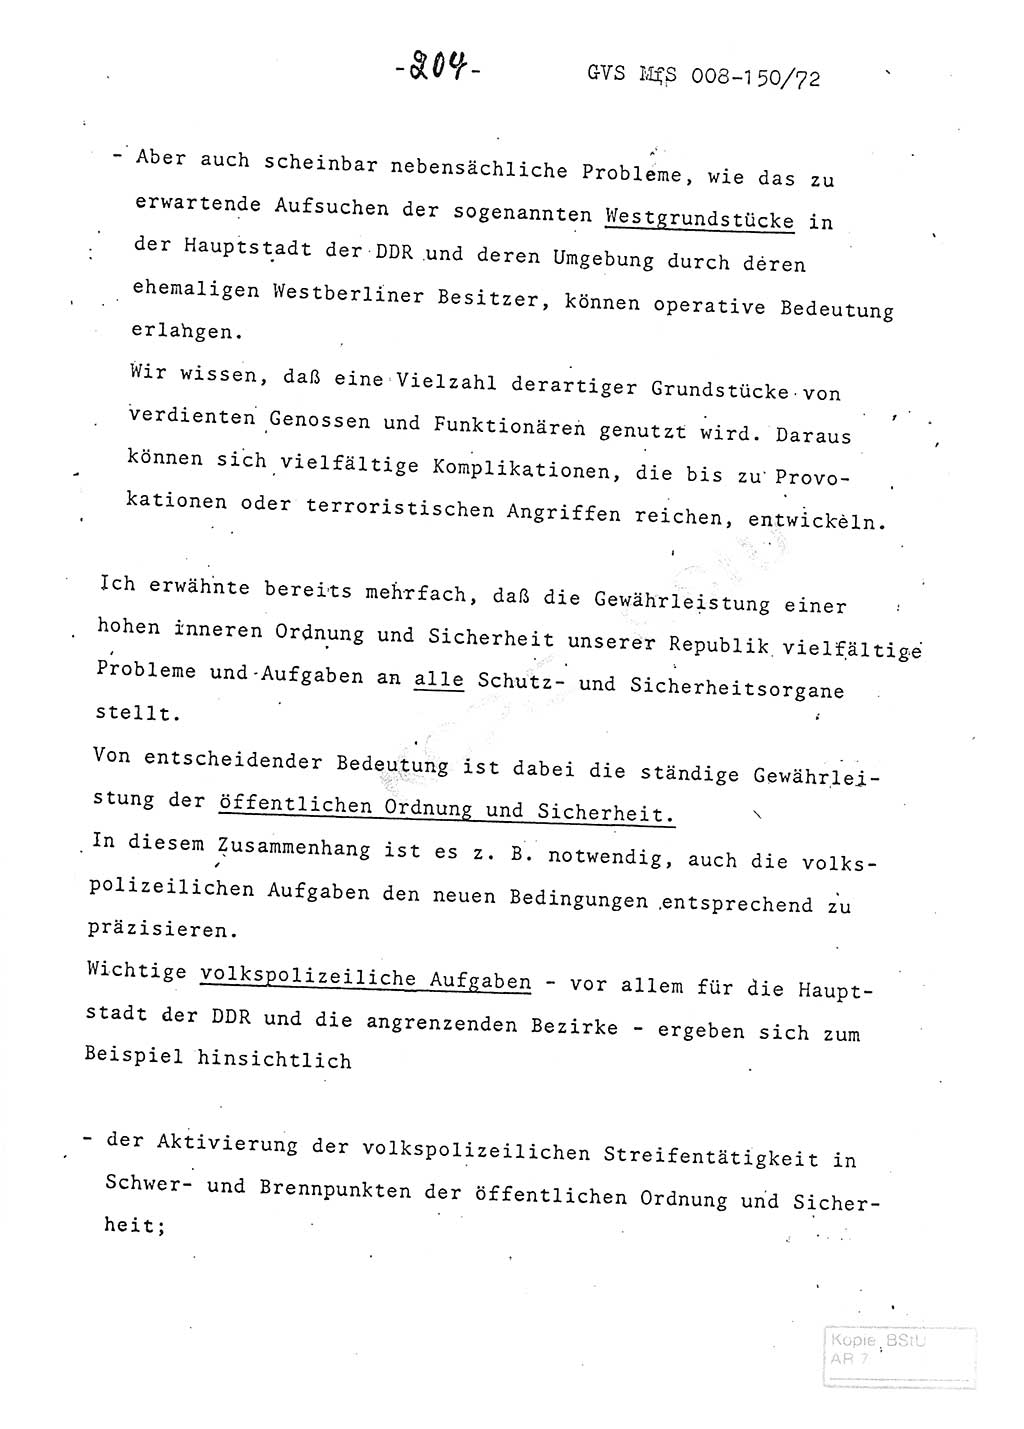 Referat (Entwurf) des Genossen Minister (Generaloberst Erich Mielke) auf der Dienstkonferenz 1972, Ministerium für Staatssicherheit (MfS) [Deutsche Demokratische Republik (DDR)], Der Minister, Geheime Verschlußsache (GVS) 008-150/72, Berlin 25.2.1972, Seite 204 (Ref. Entw. DK MfS DDR Min. GVS 008-150/72 1972, S. 204)